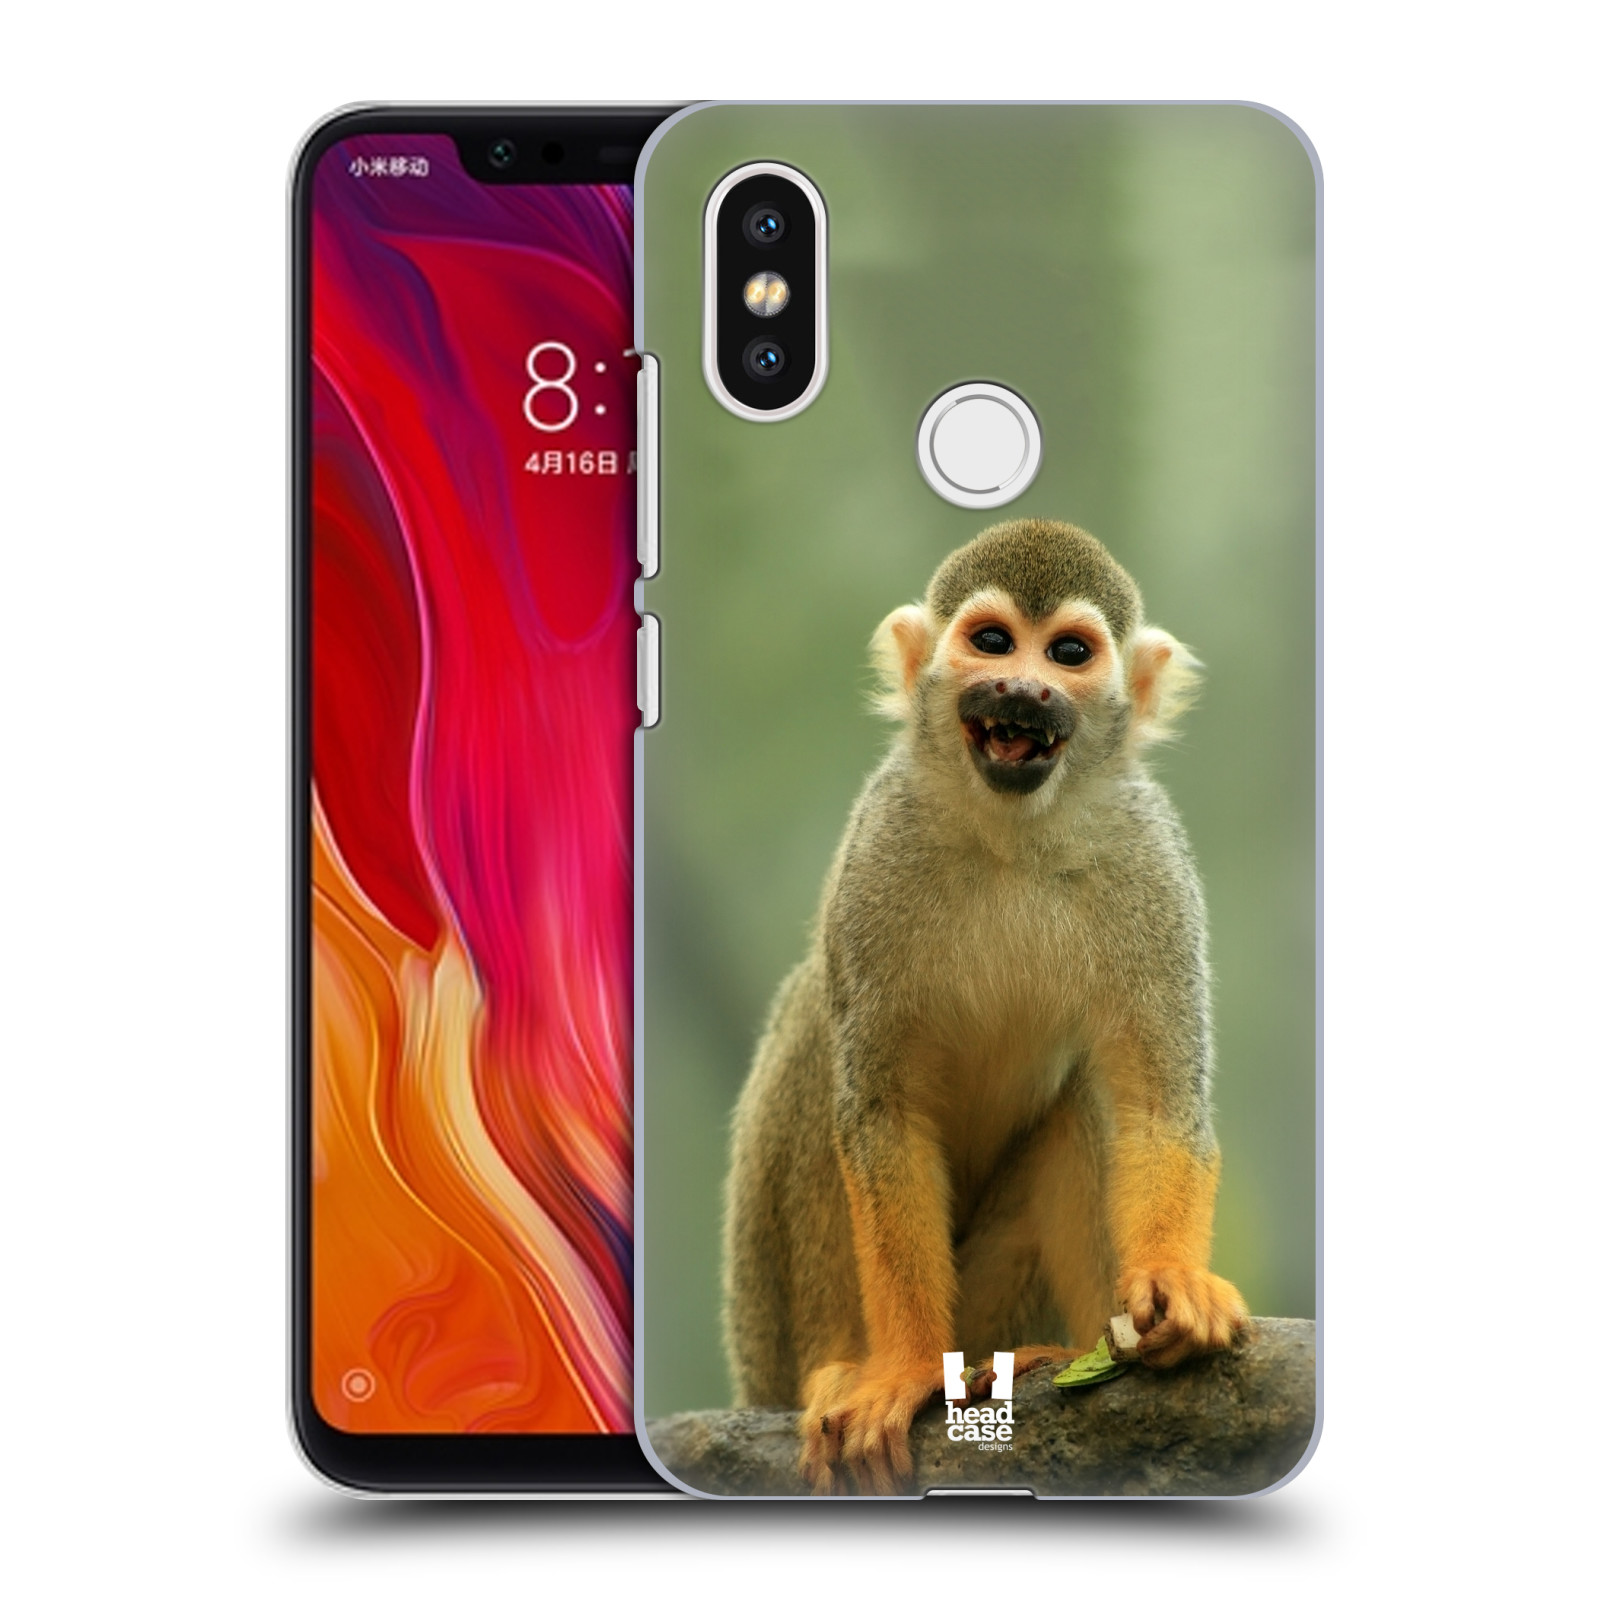 HEAD CASE plastový obal na mobil Xiaomi Mi 8 vzor slavná zvířata foto opice